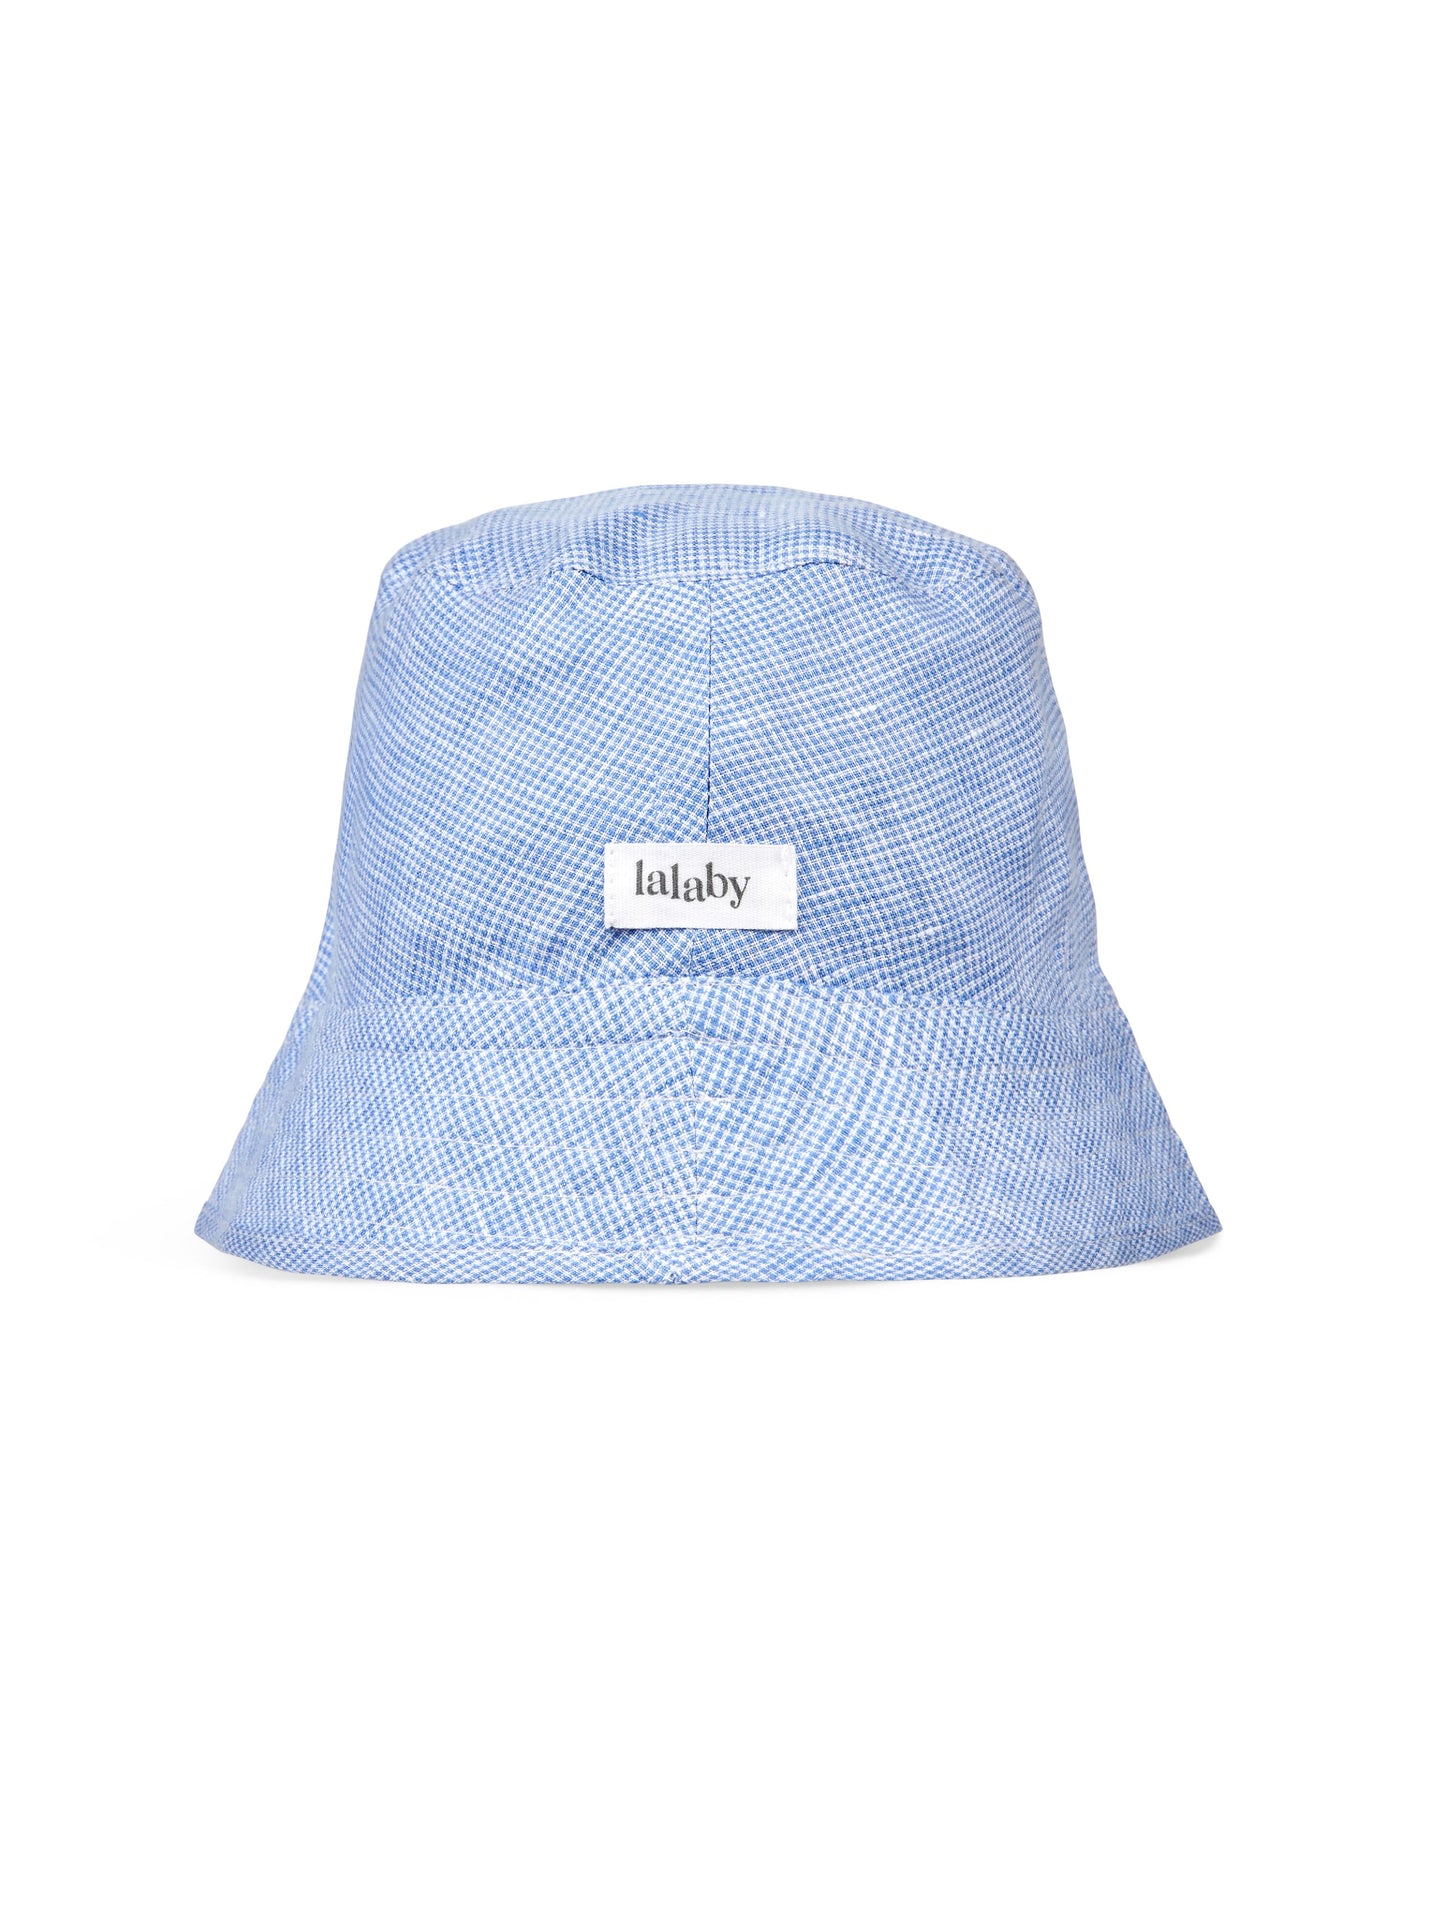 Lalaby - Loui hat - Pepita check